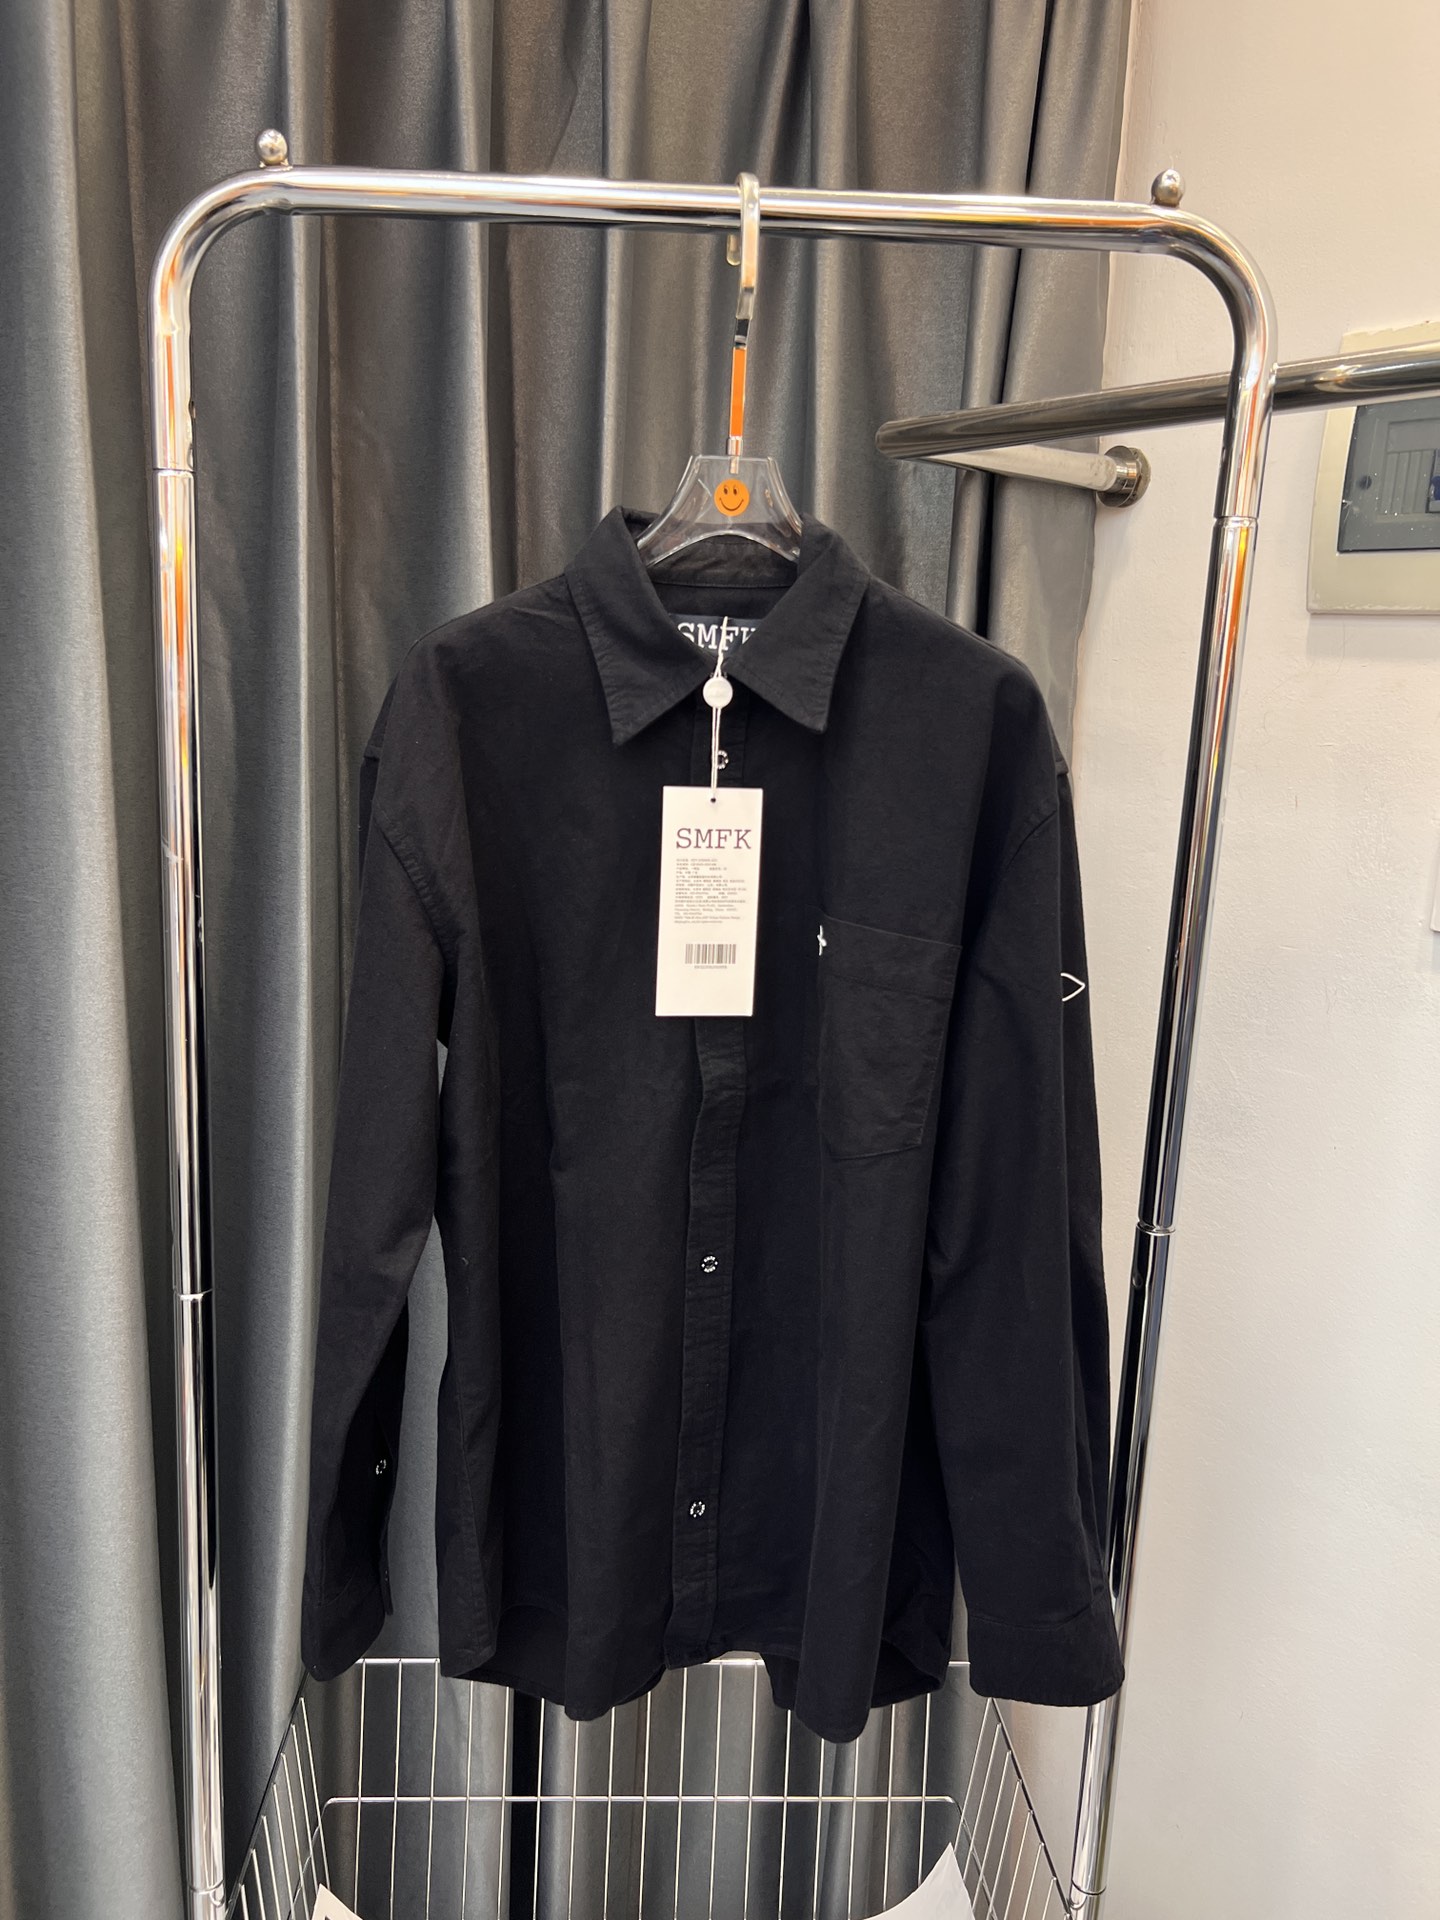 SMFKシャツ 洗い方スーパーコピー 人気 ファッション ビジネス カジュアル 刺繡シャツ ブラック_2